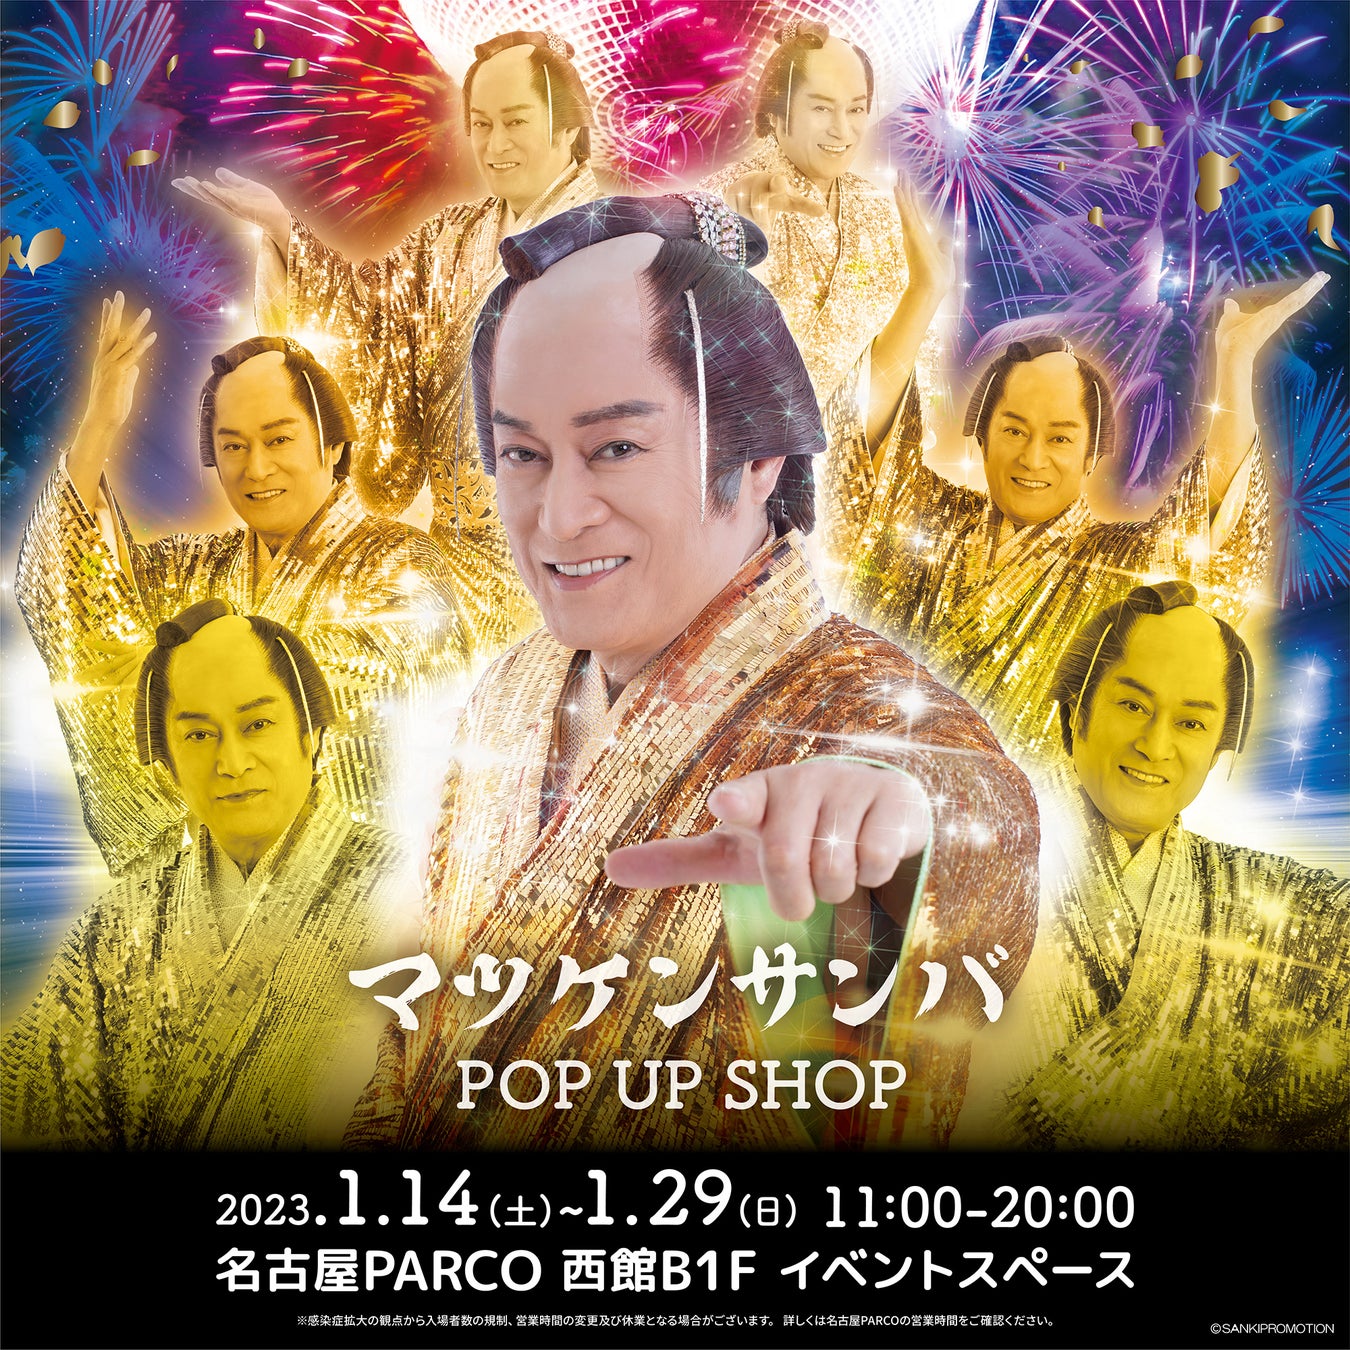 マツケンブーム再来！東京で大盛況の人気イベントが東海初登場！「マツケンサンバ POP UP SHOP」